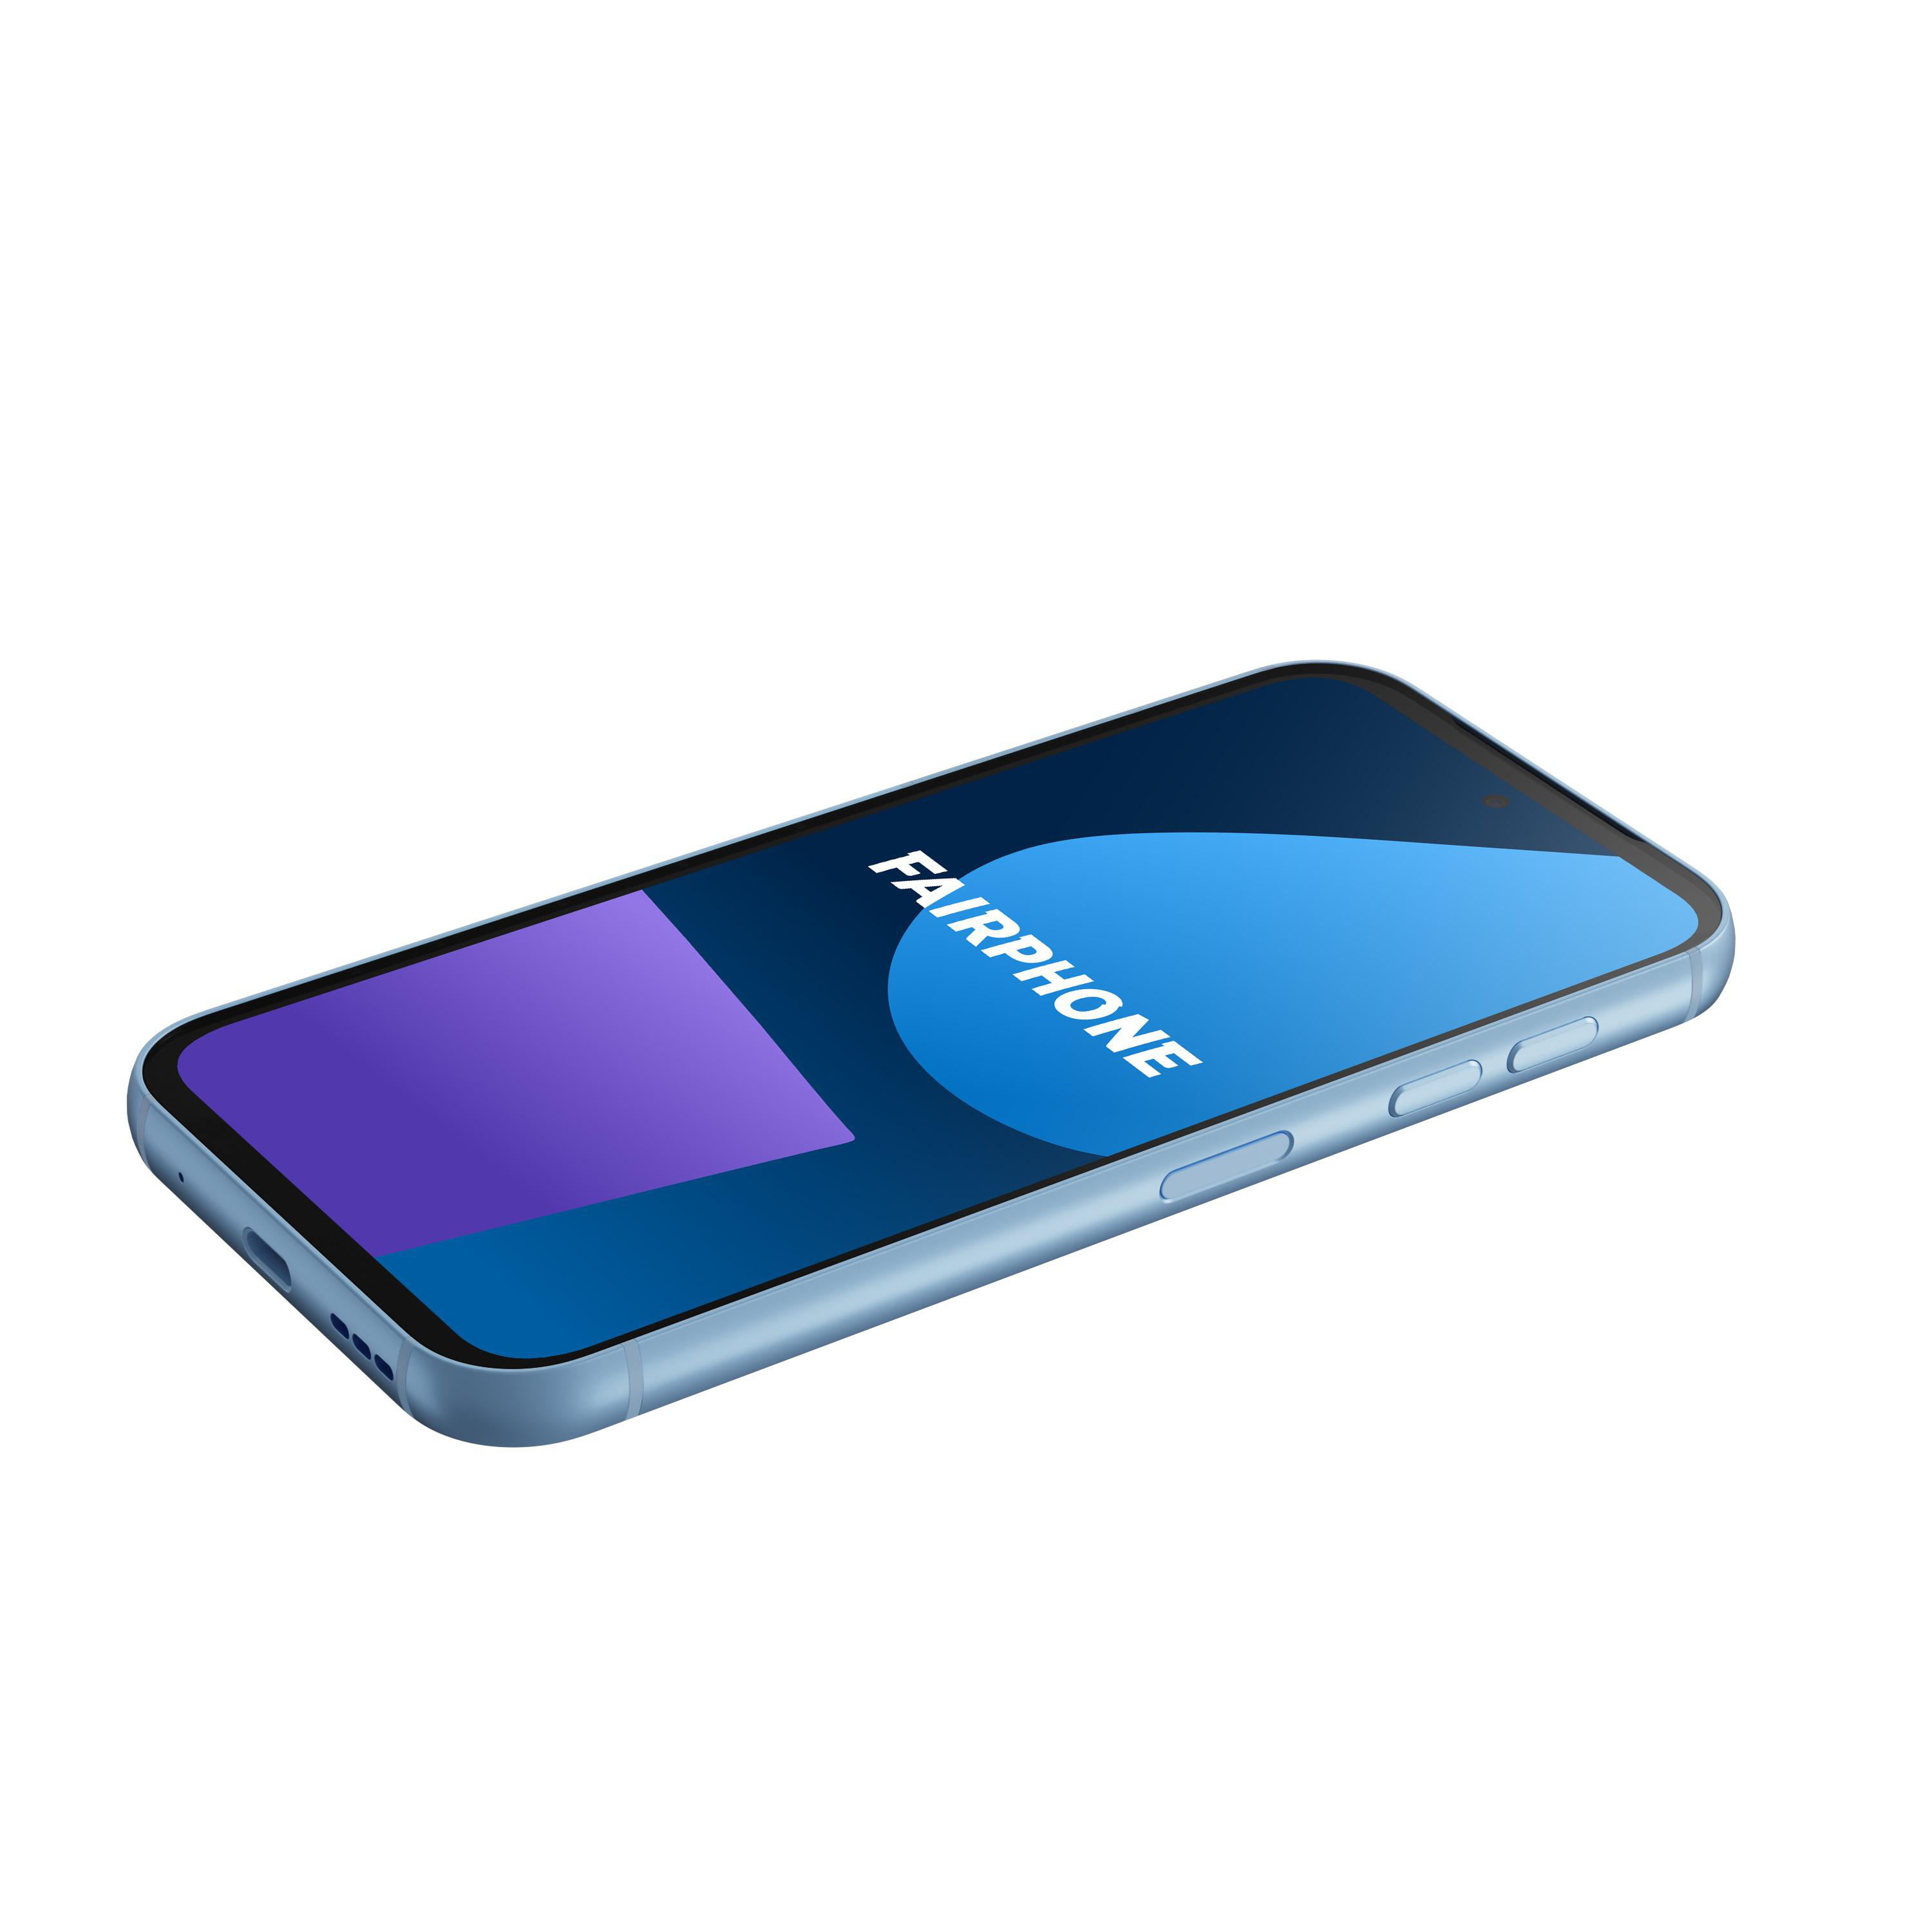 FAIRPHONE 5 Dual 256 GB SIM Blue